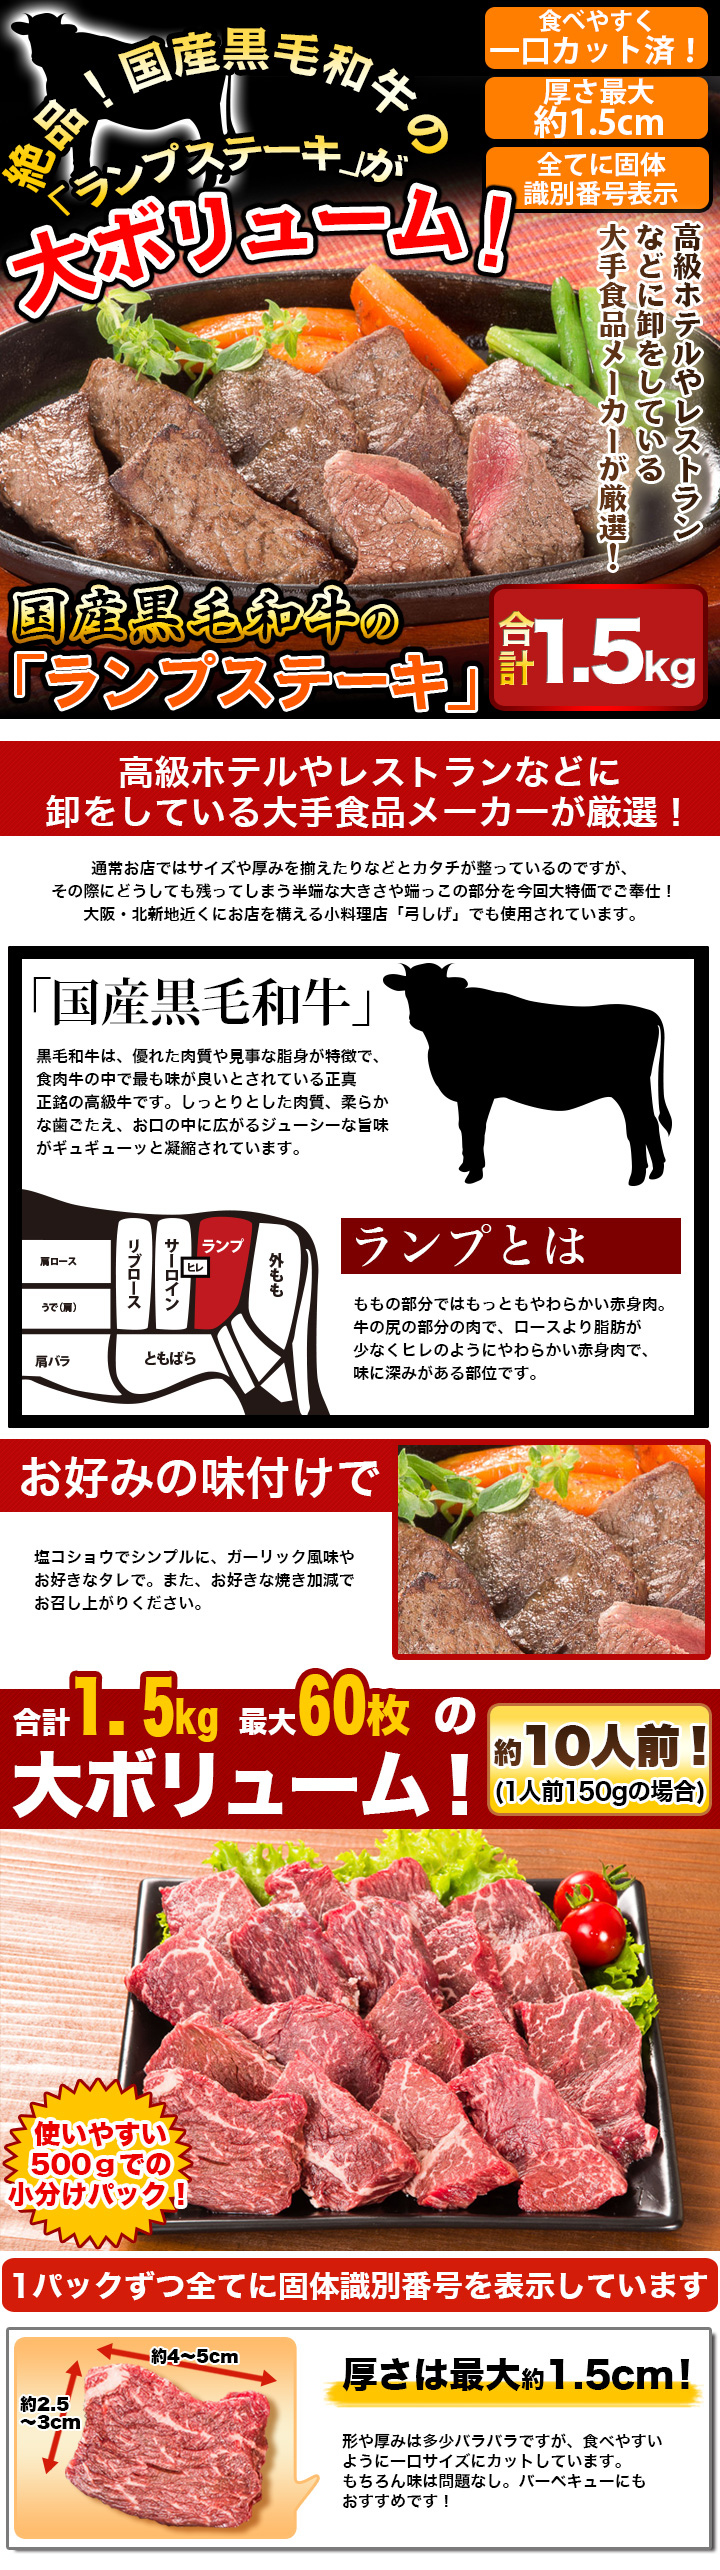 国産黒毛和牛の「ランプステーキ」　合計1.5kg(1kg+500g)